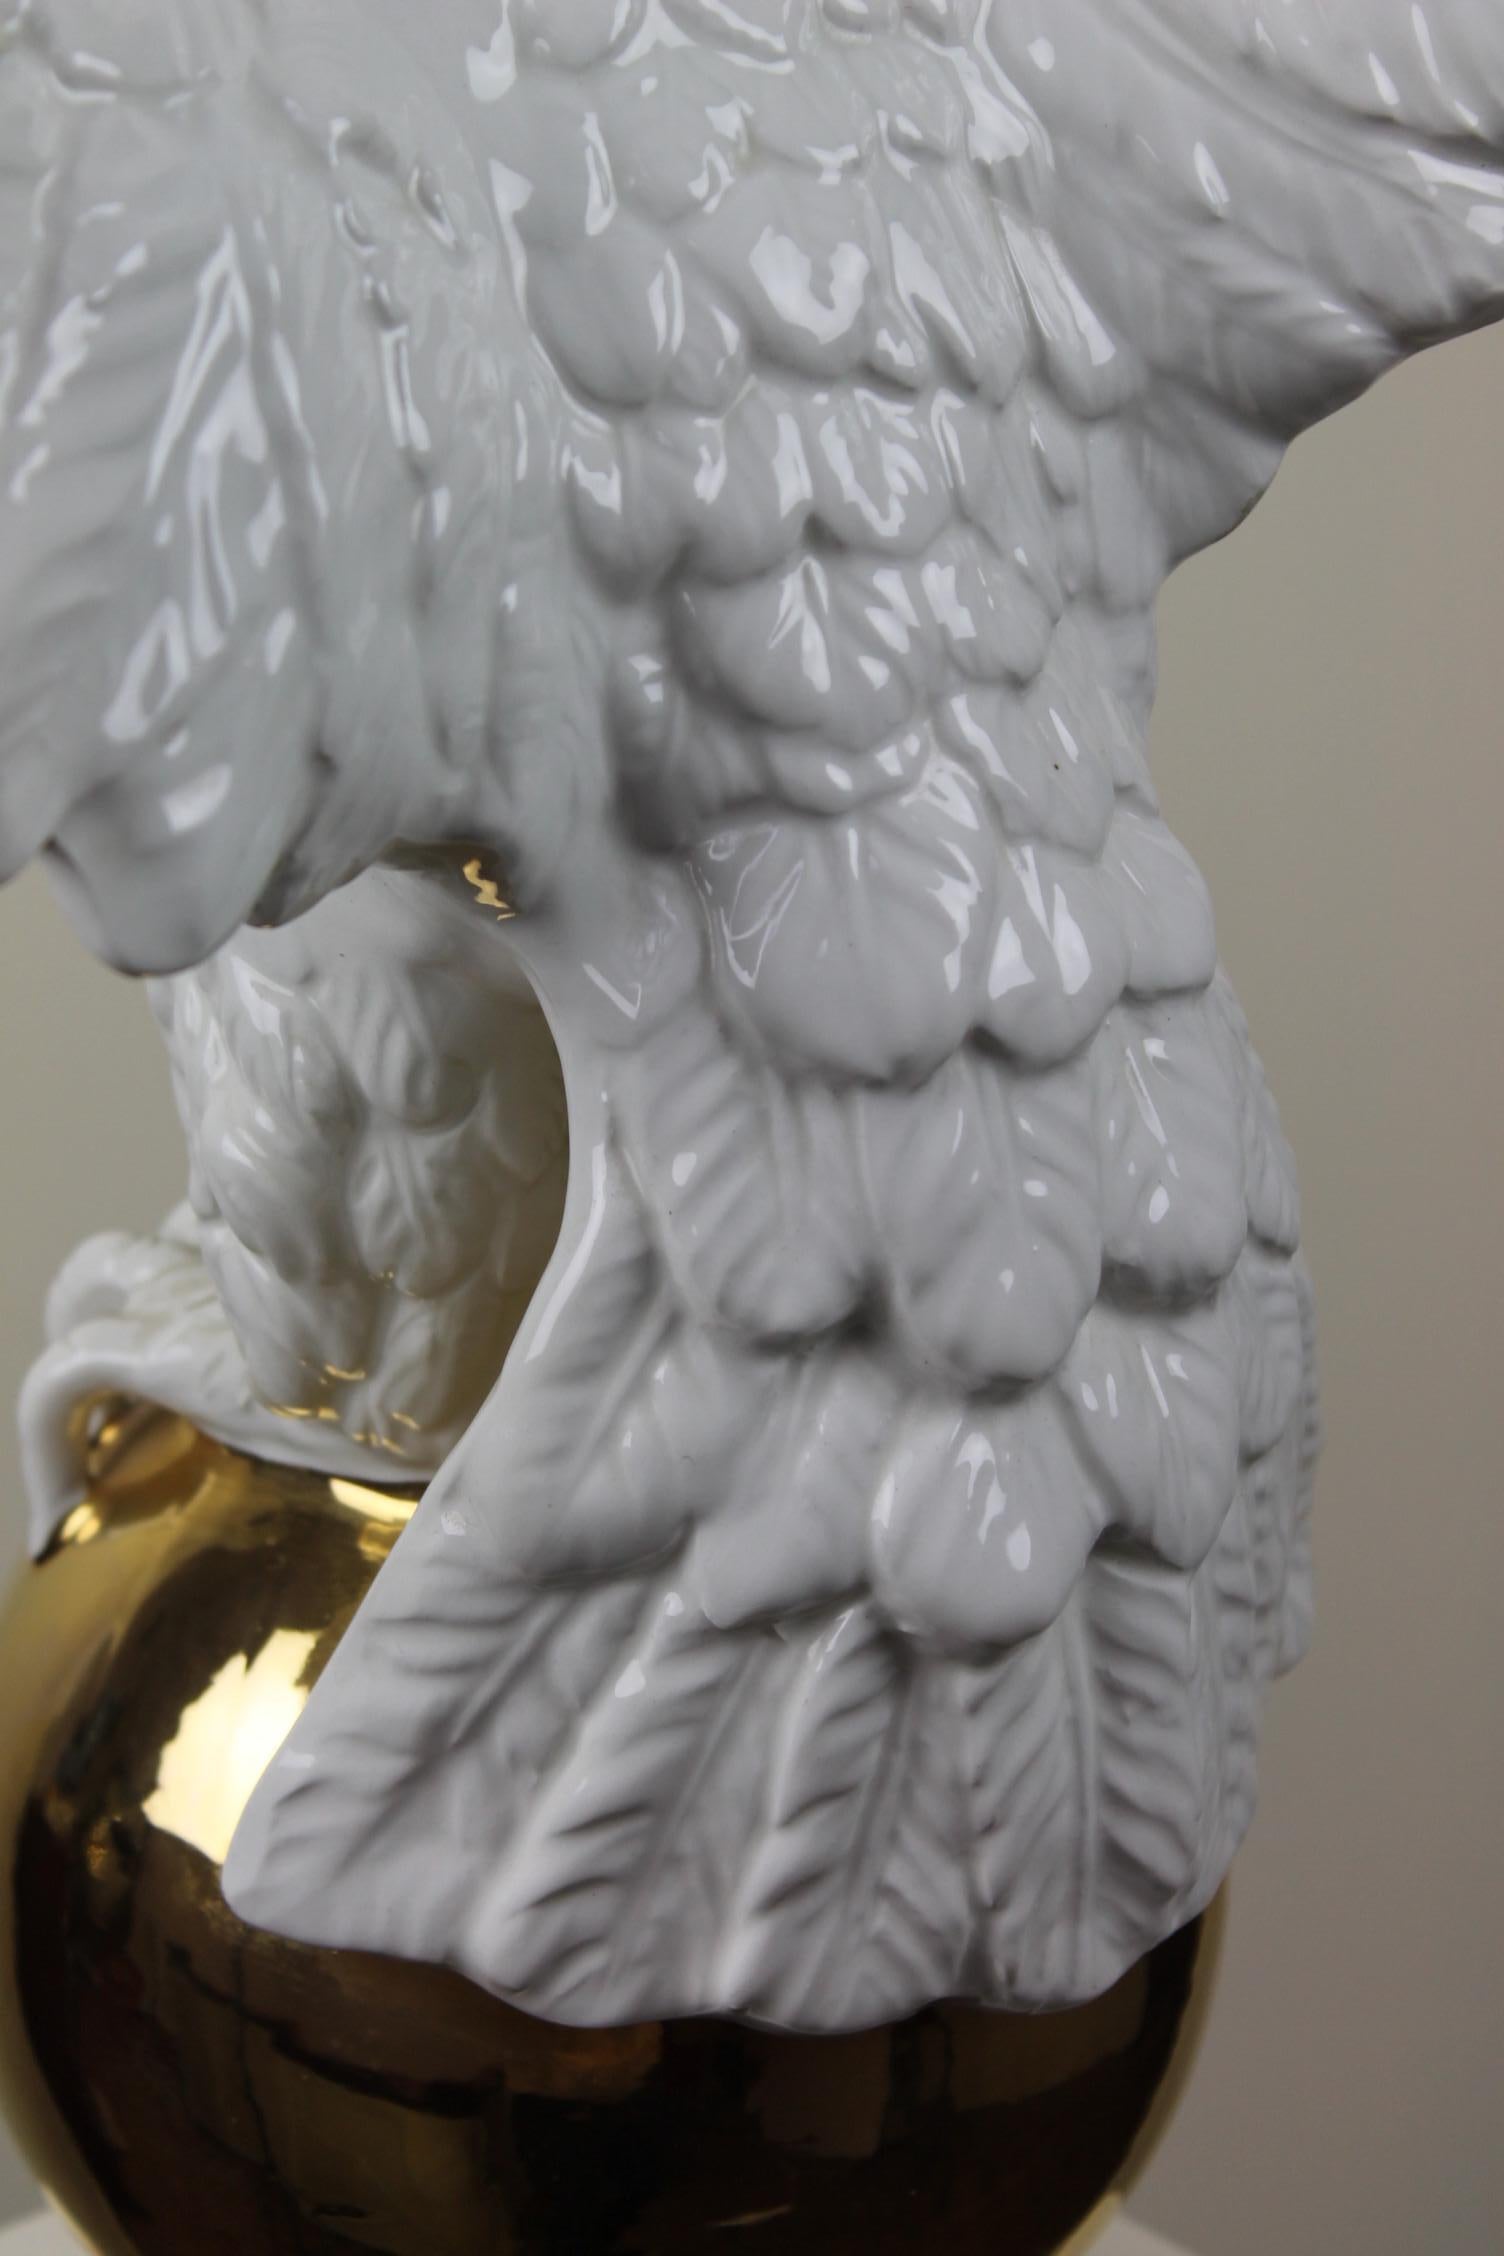 Italian White Ceramic Eagle Statue with Wings Spread, 1970s 8